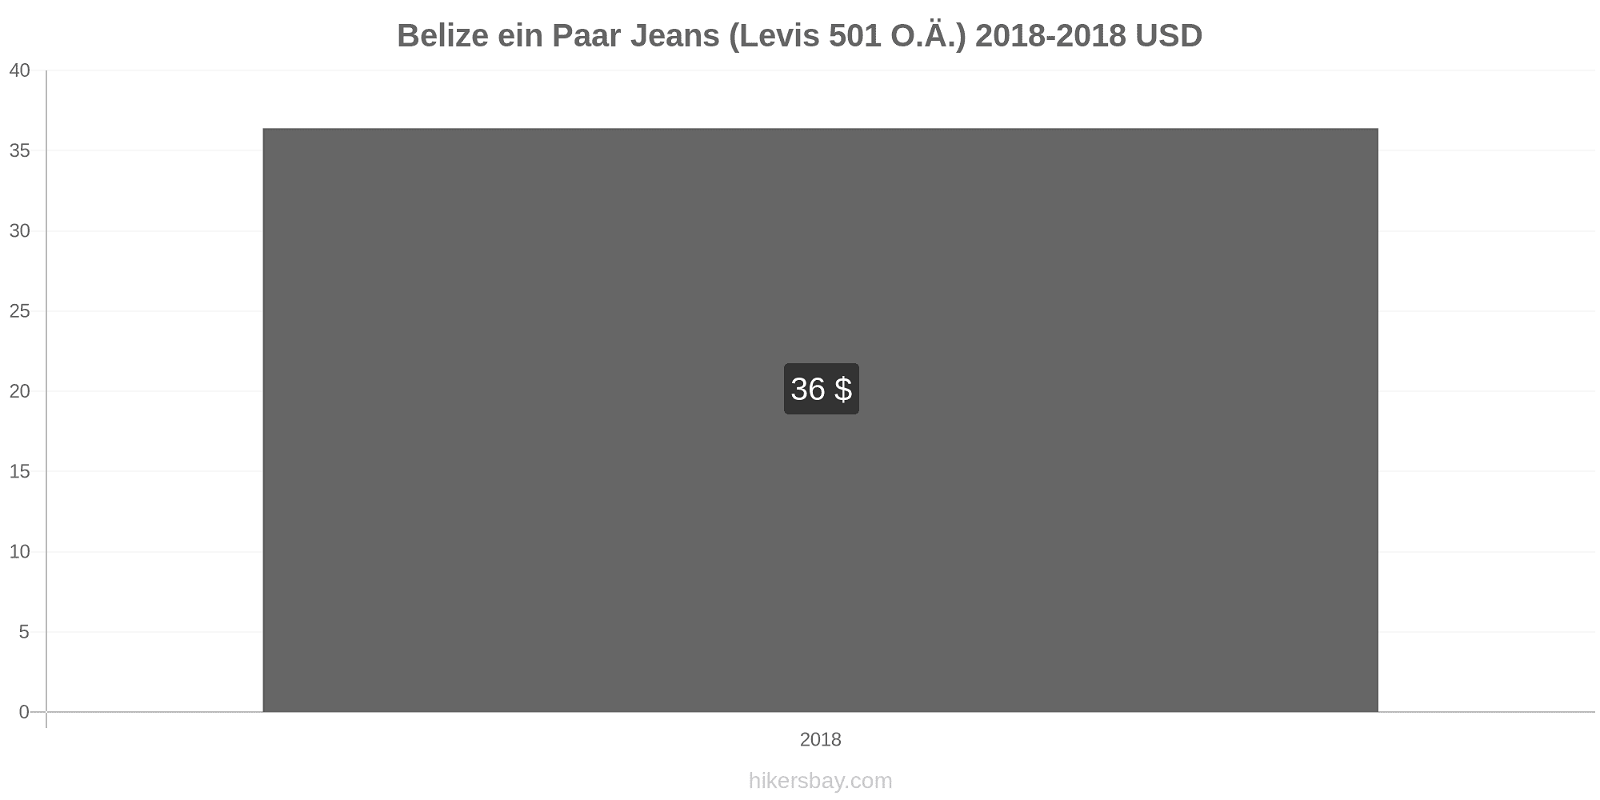 Belize Preisänderungen 1 Paar Jeans (Levis 501 oder ähnlich) hikersbay.com